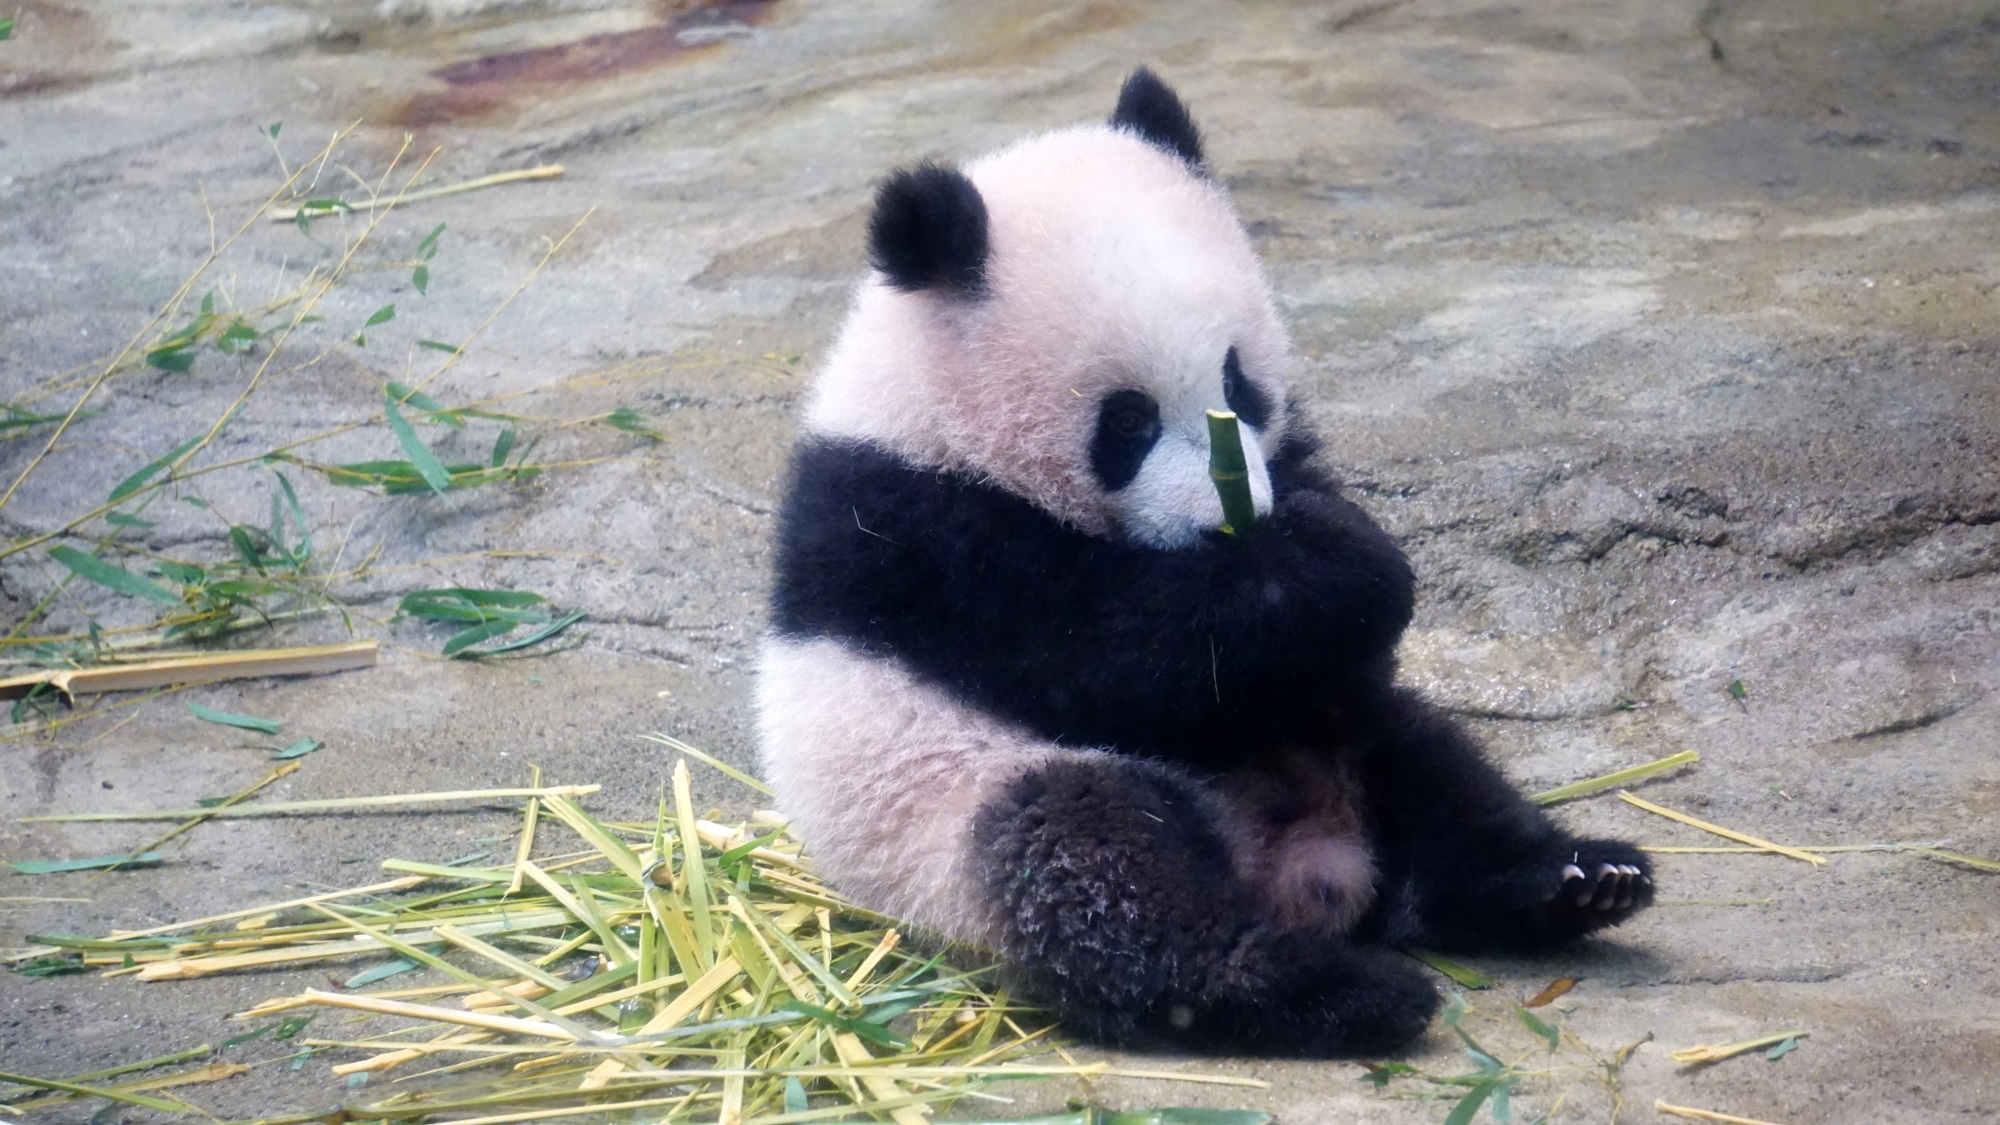 Ueno Zoo's panda cub Xiang Xiang makes her media debut | The Japan Times